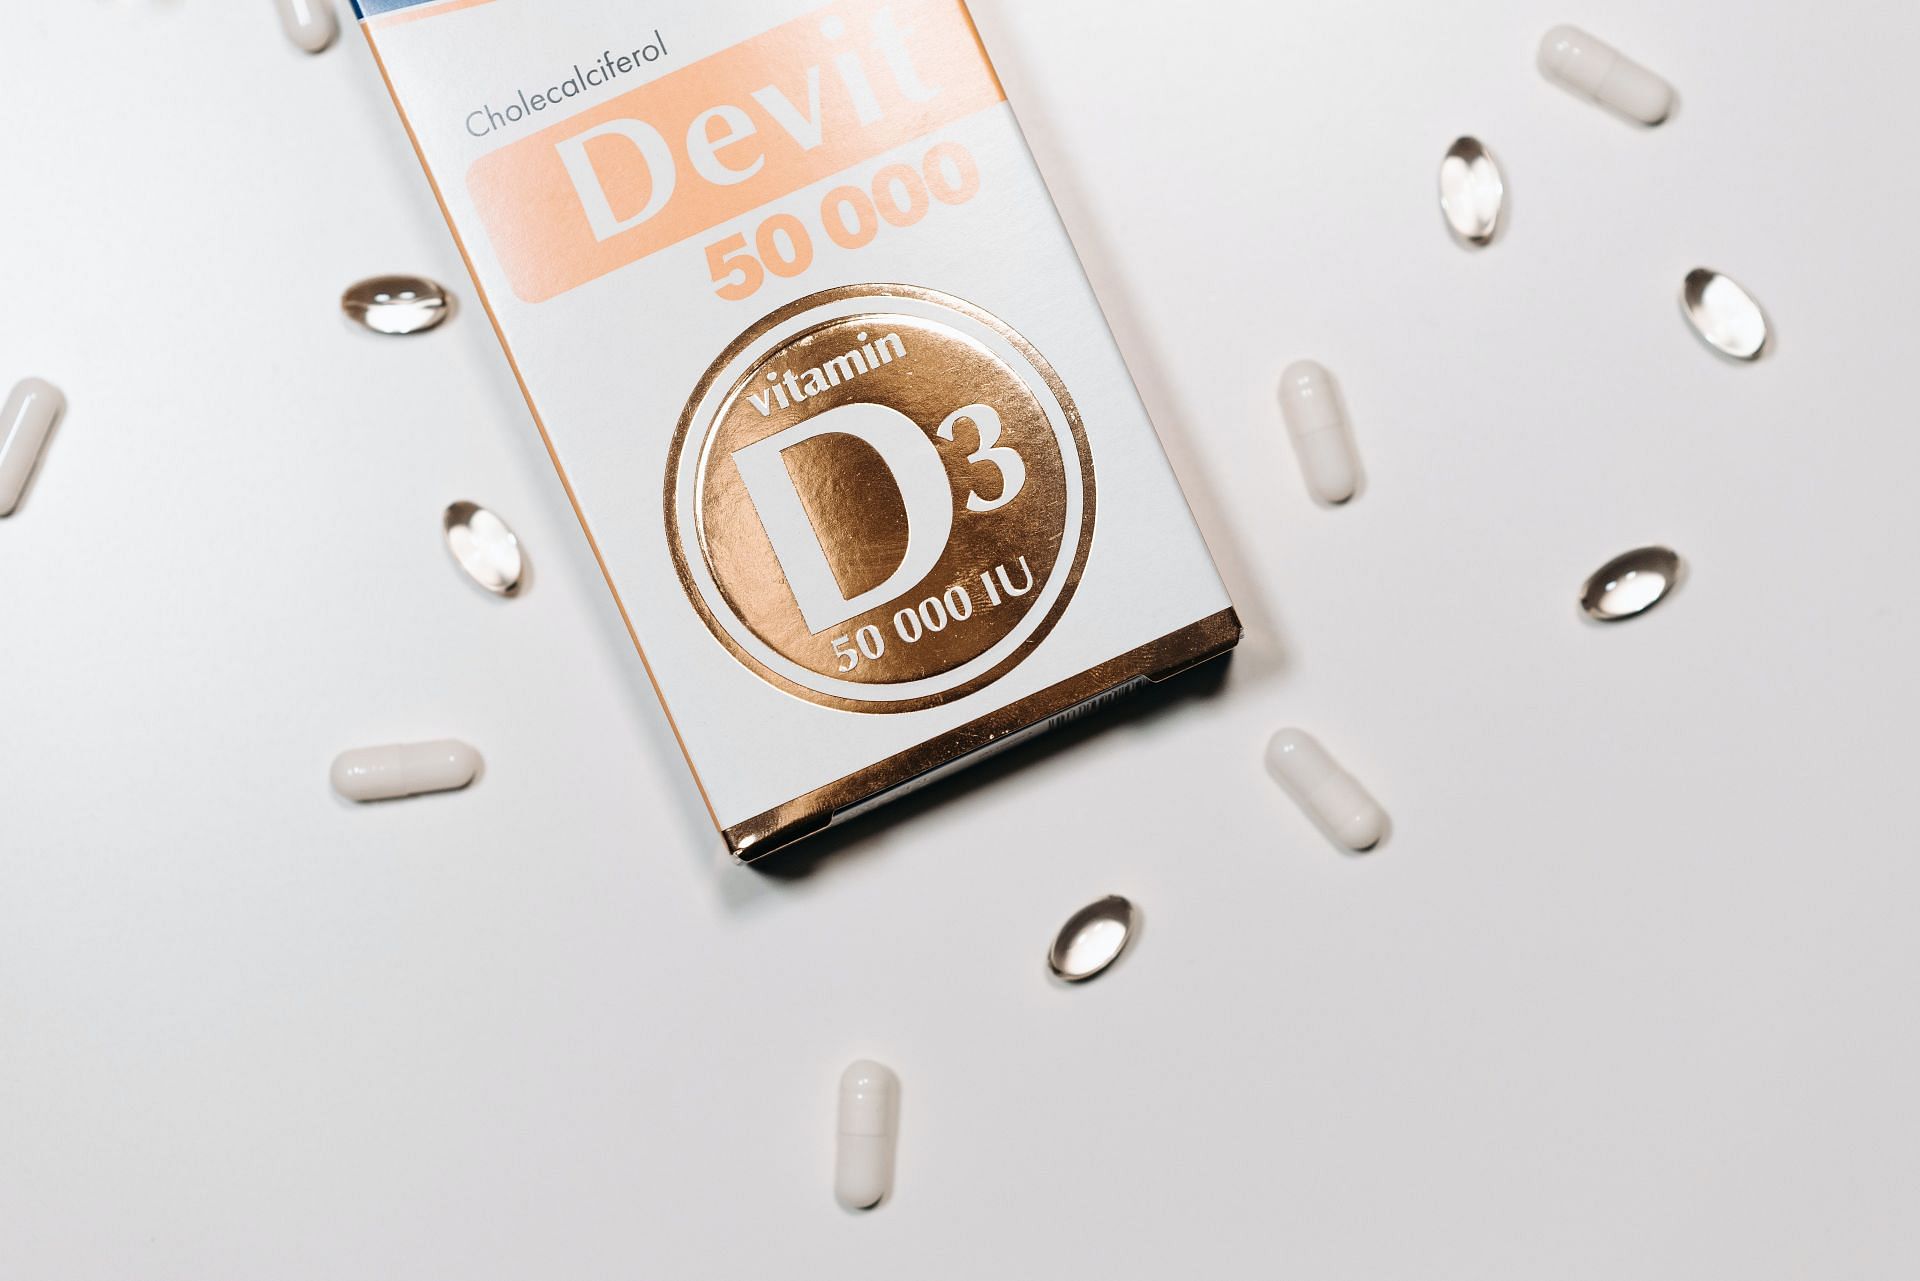 Researchers sought out participants who took vitamin D supplements. (Image via Pexels/Pavel Danilyuk)